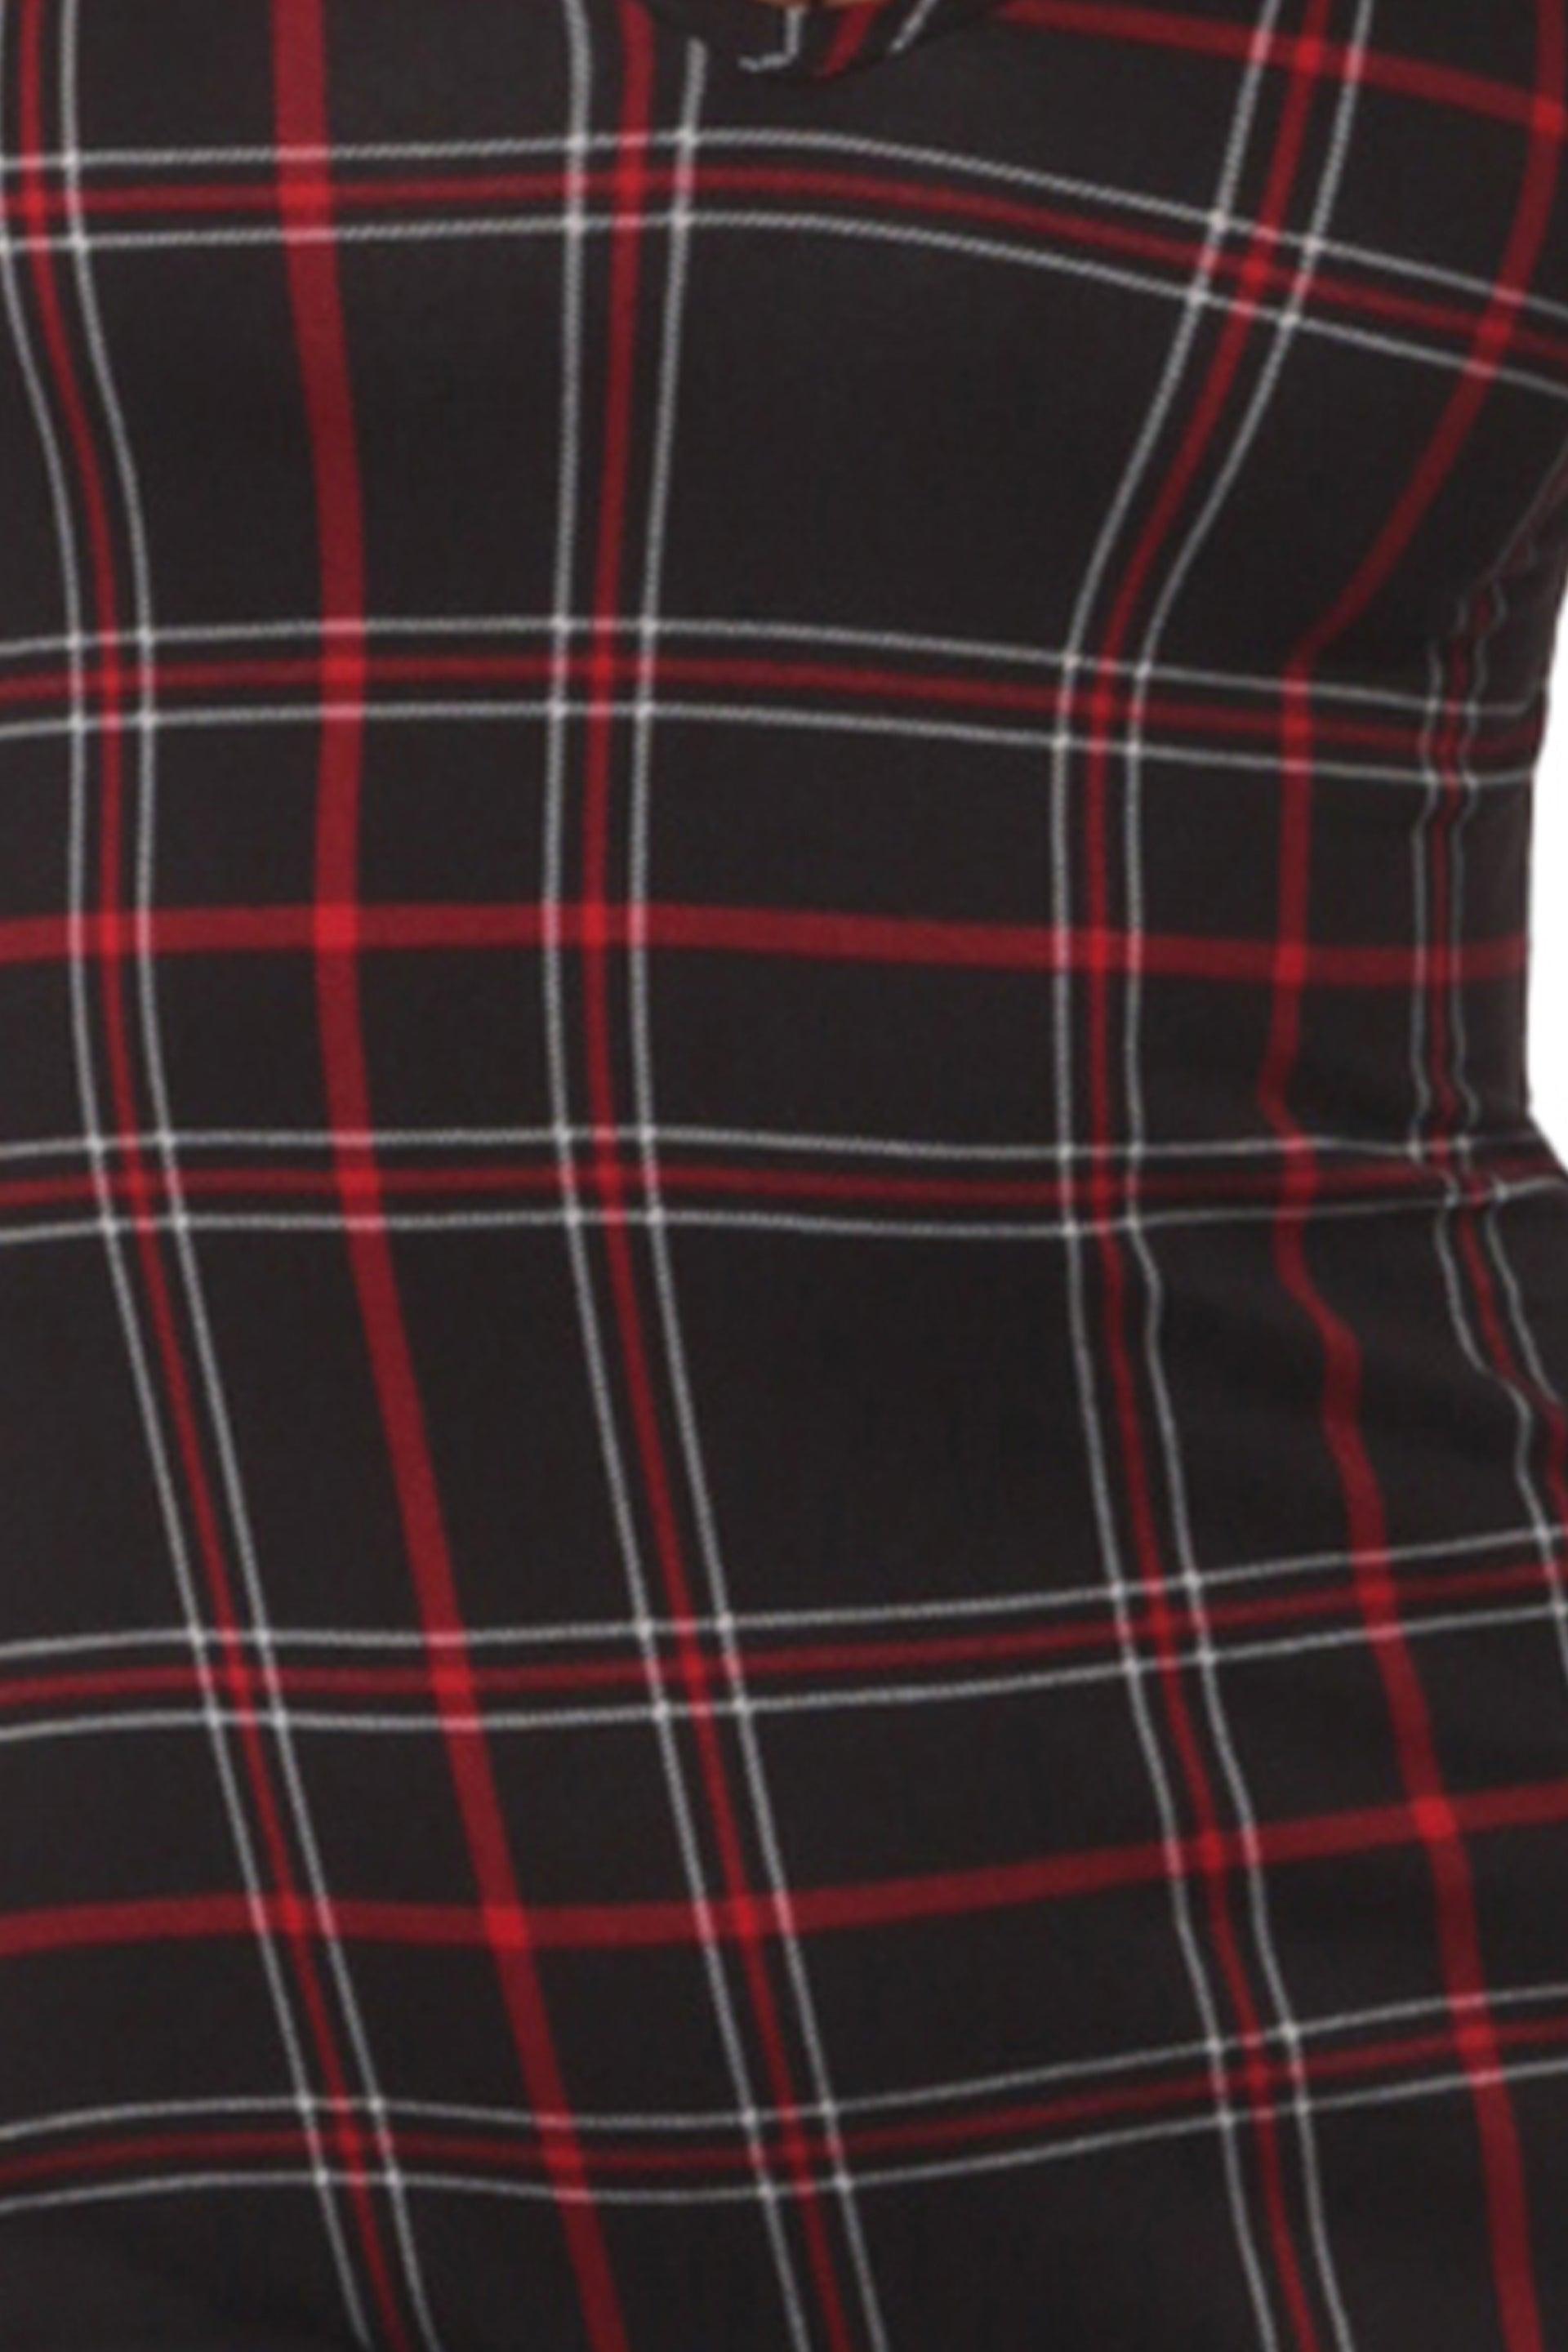 Holiday Print Fleece Lined Romper Onesie - Black, Red, White Plaid - SHOSHO Fashion